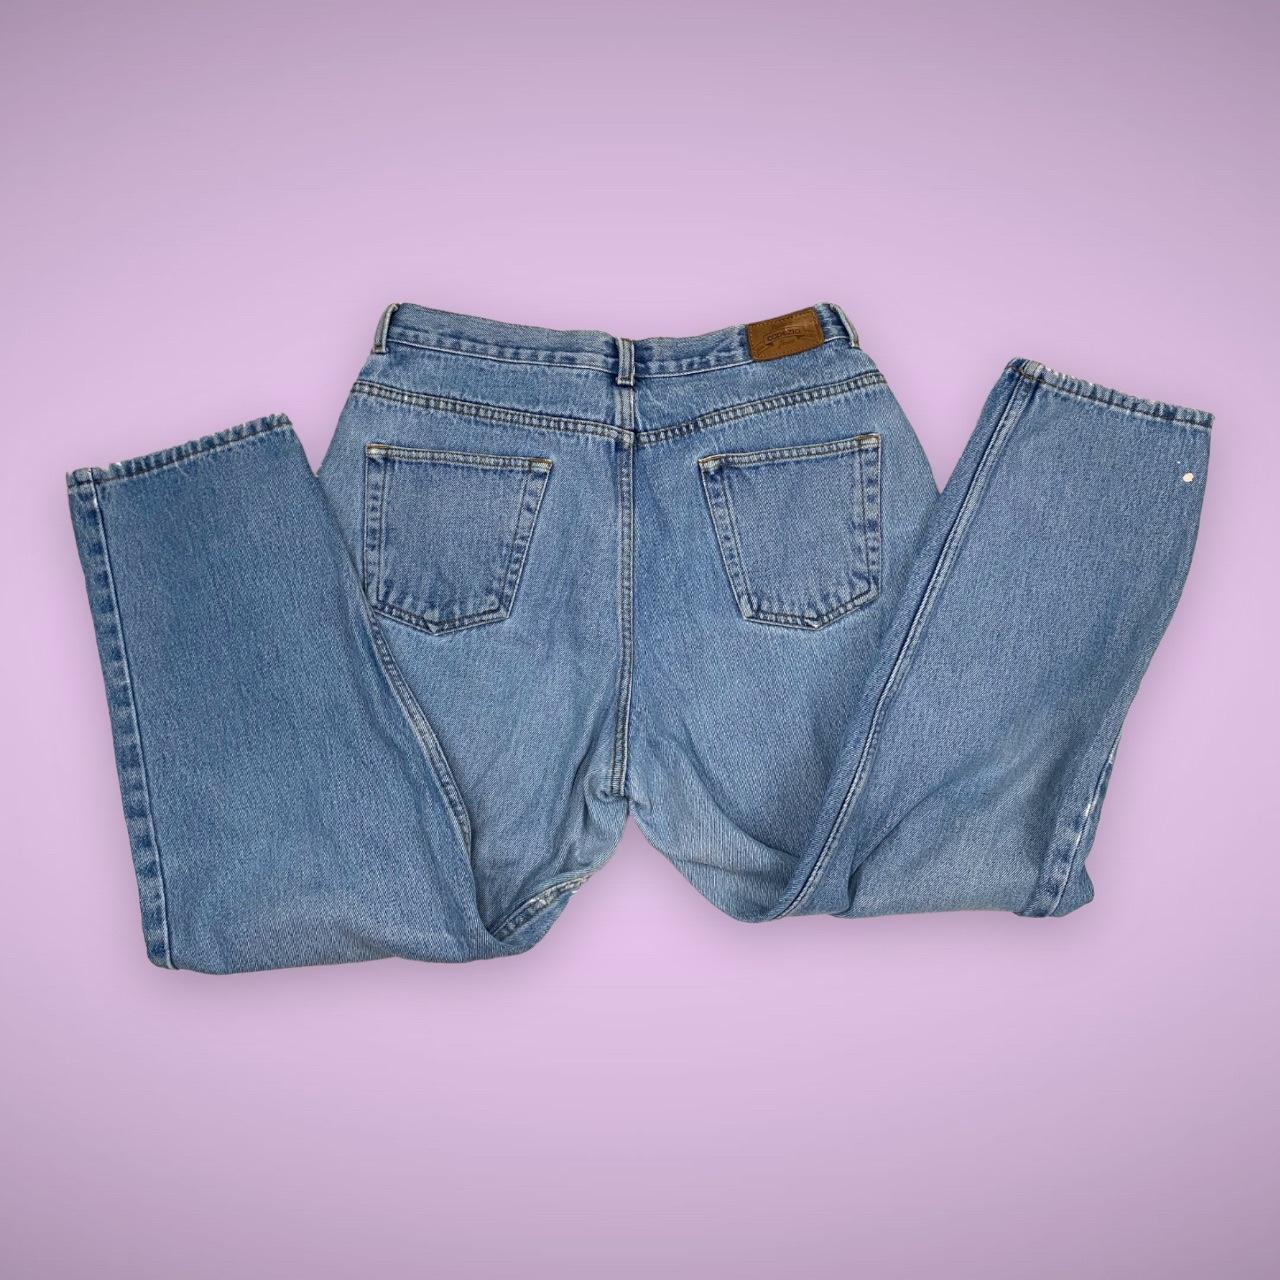 Vintage Capezio Mom Jeans Size 14S #depop... - Depop